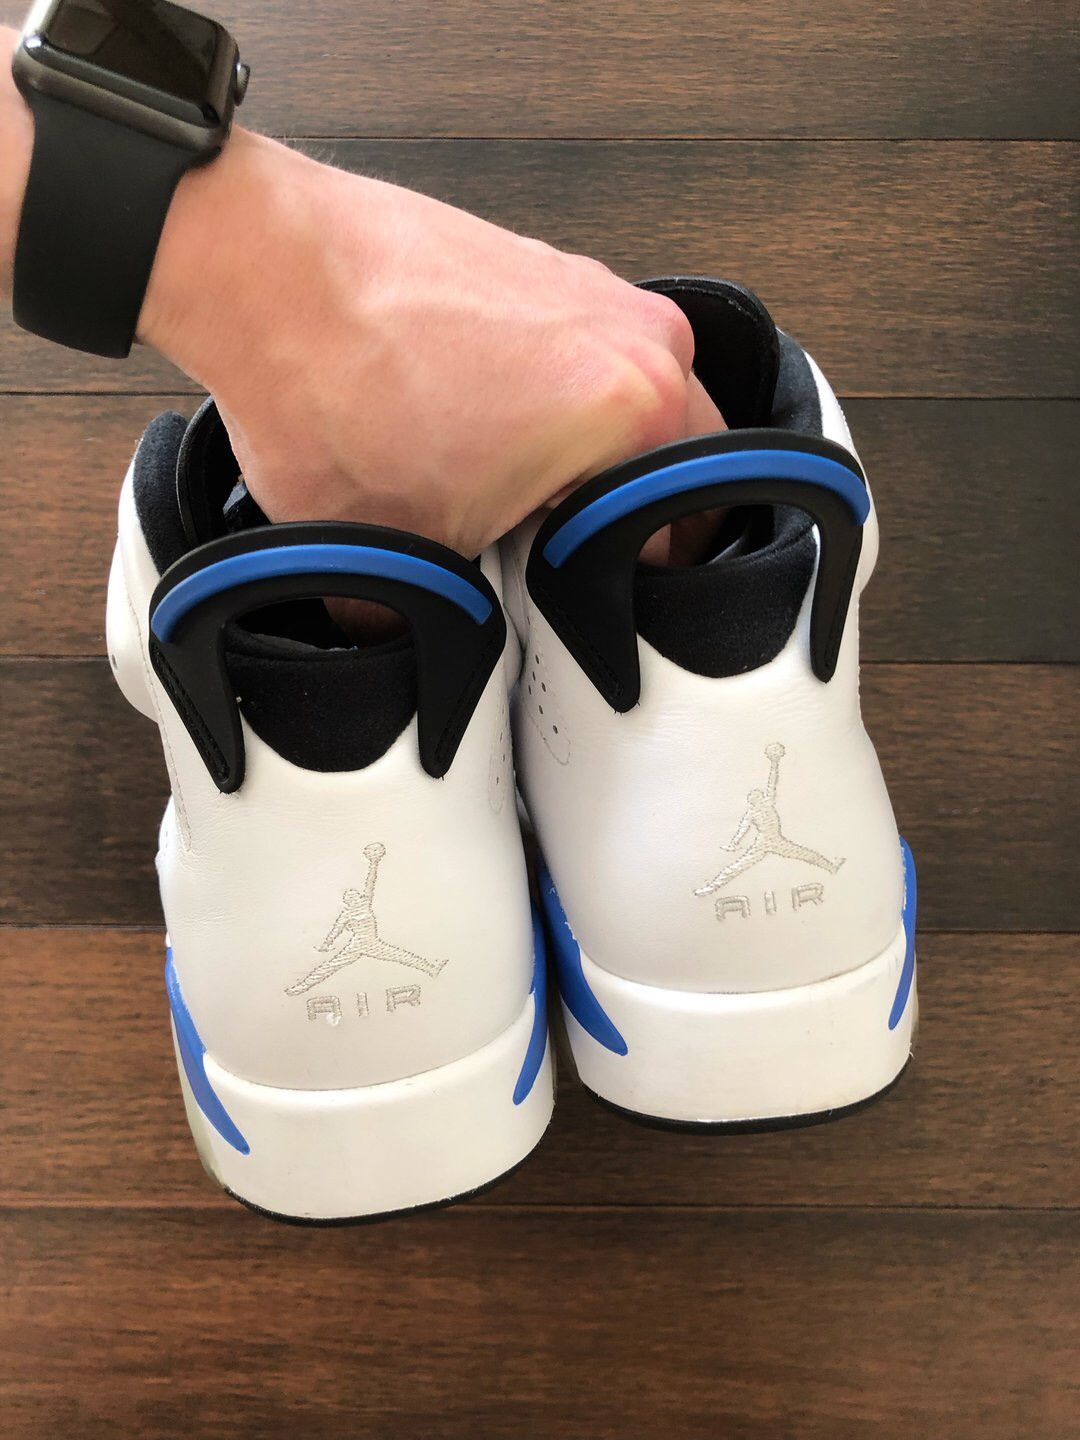 Nike Air Jordan 6 White Sport Blue Shoes Size US 11 / EU 44 - 6 Preview